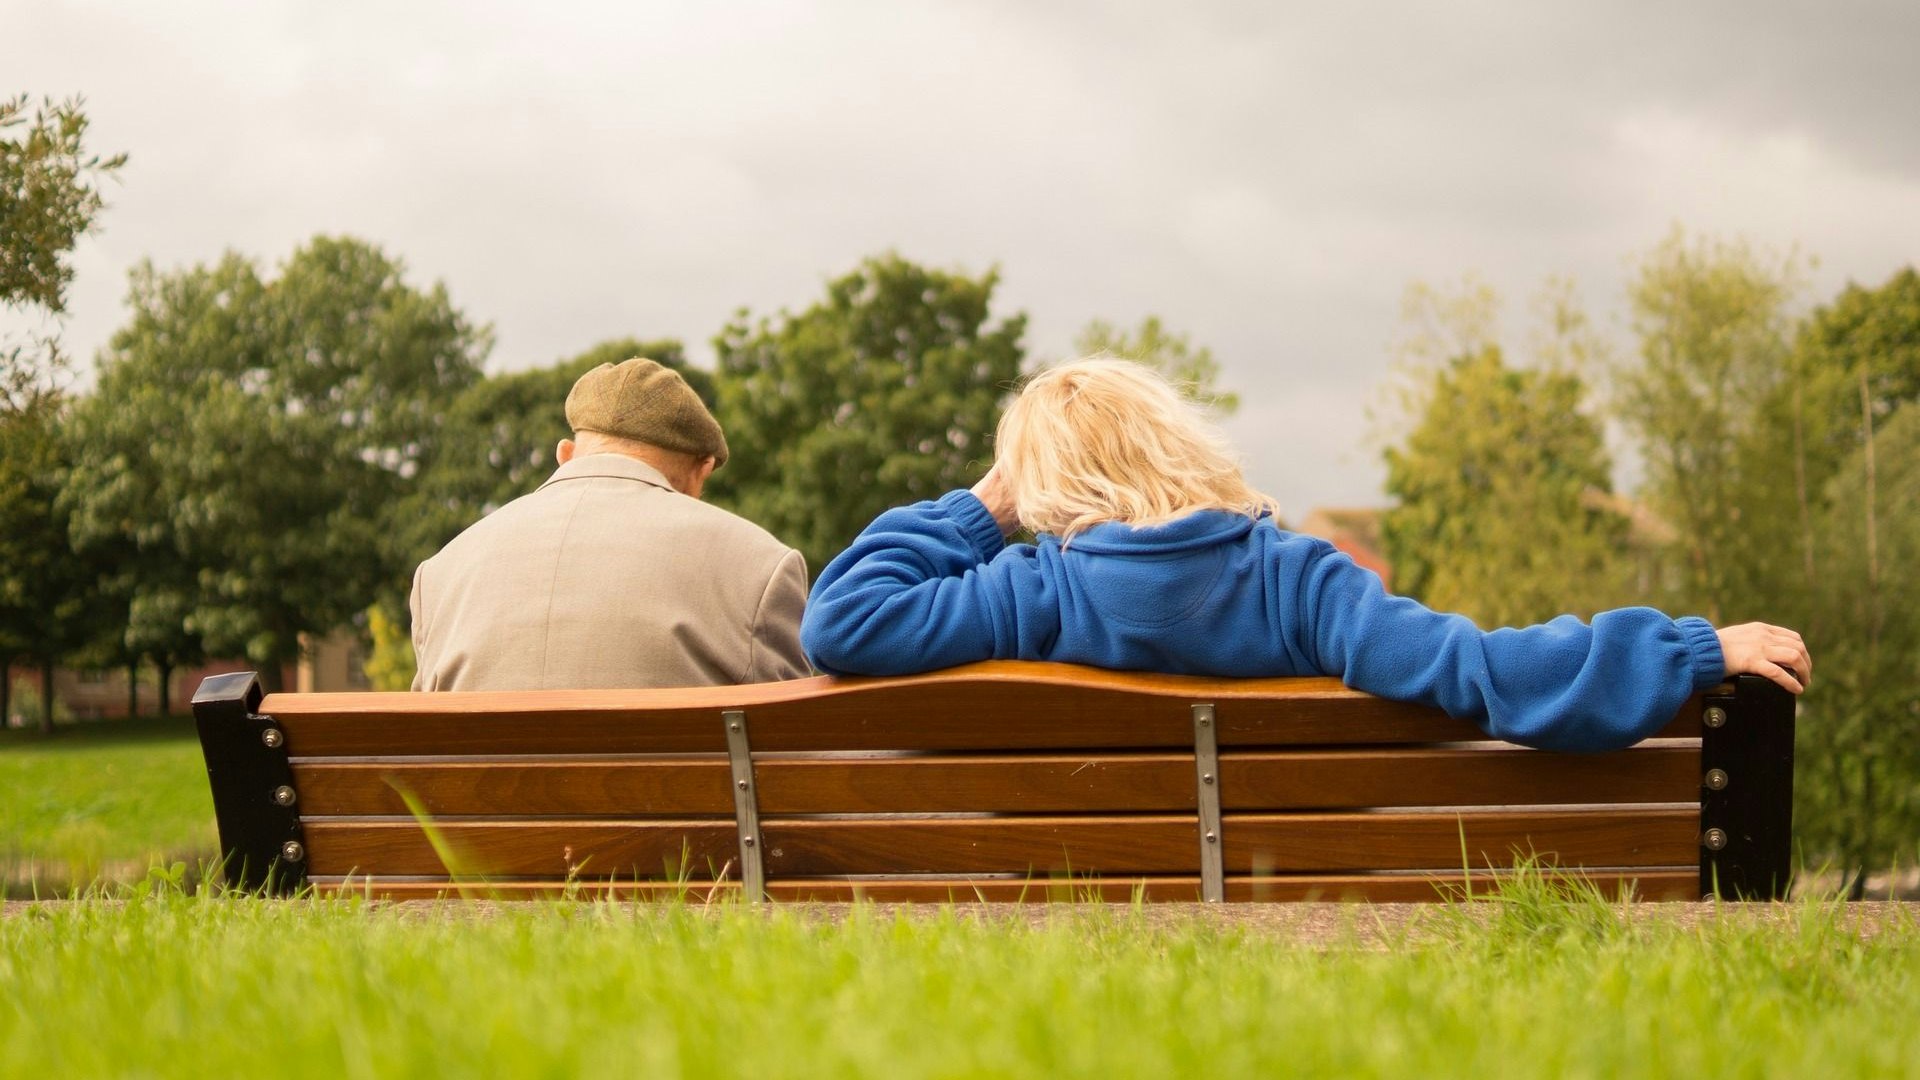 Es gibt immer mehr ältere Menschen. Die Selbstgestalter schaffen Angebote für diejenigen, die in den Ruhestand wechseln. Symbolfoto: Pixabay